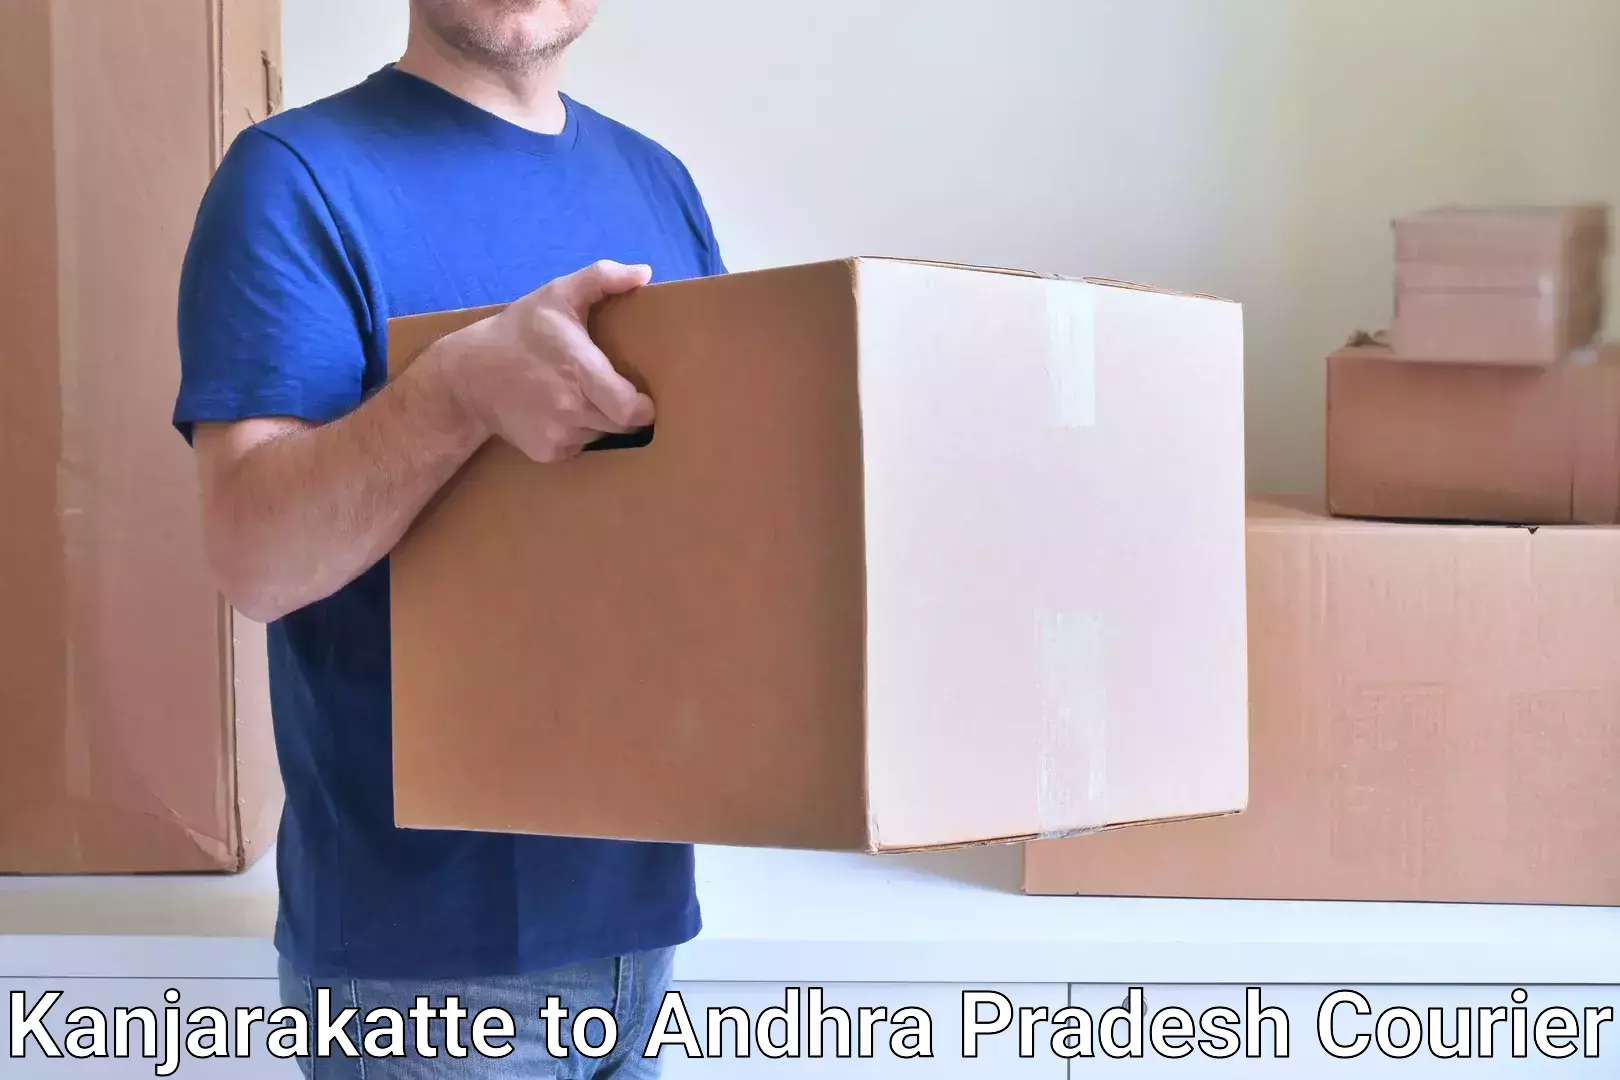 Efficient freight transportation Kanjarakatte to Andhra Pradesh